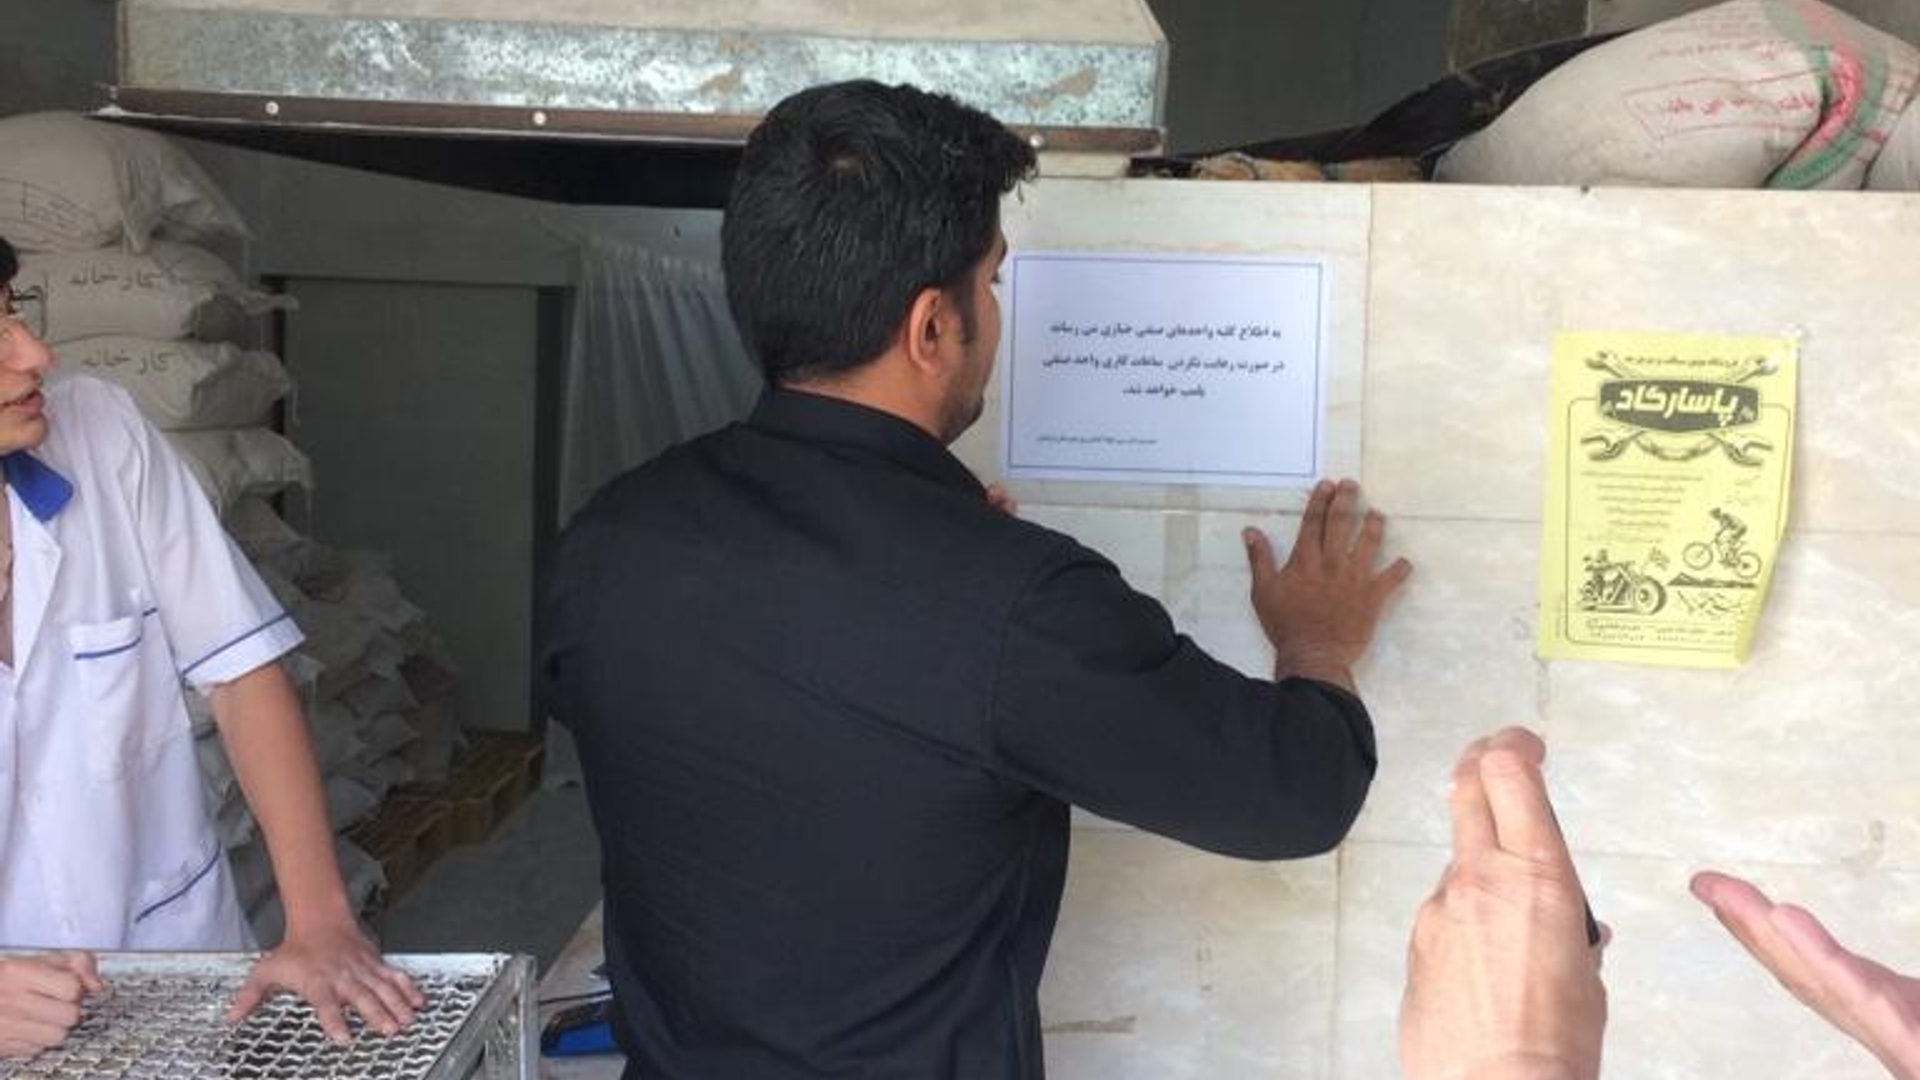 نظارت و بازرسی از نانوایی های شهر فرمهین توسط اتاق اصناف و بازرگانی شهرستان فراهان انجام پذیرفت